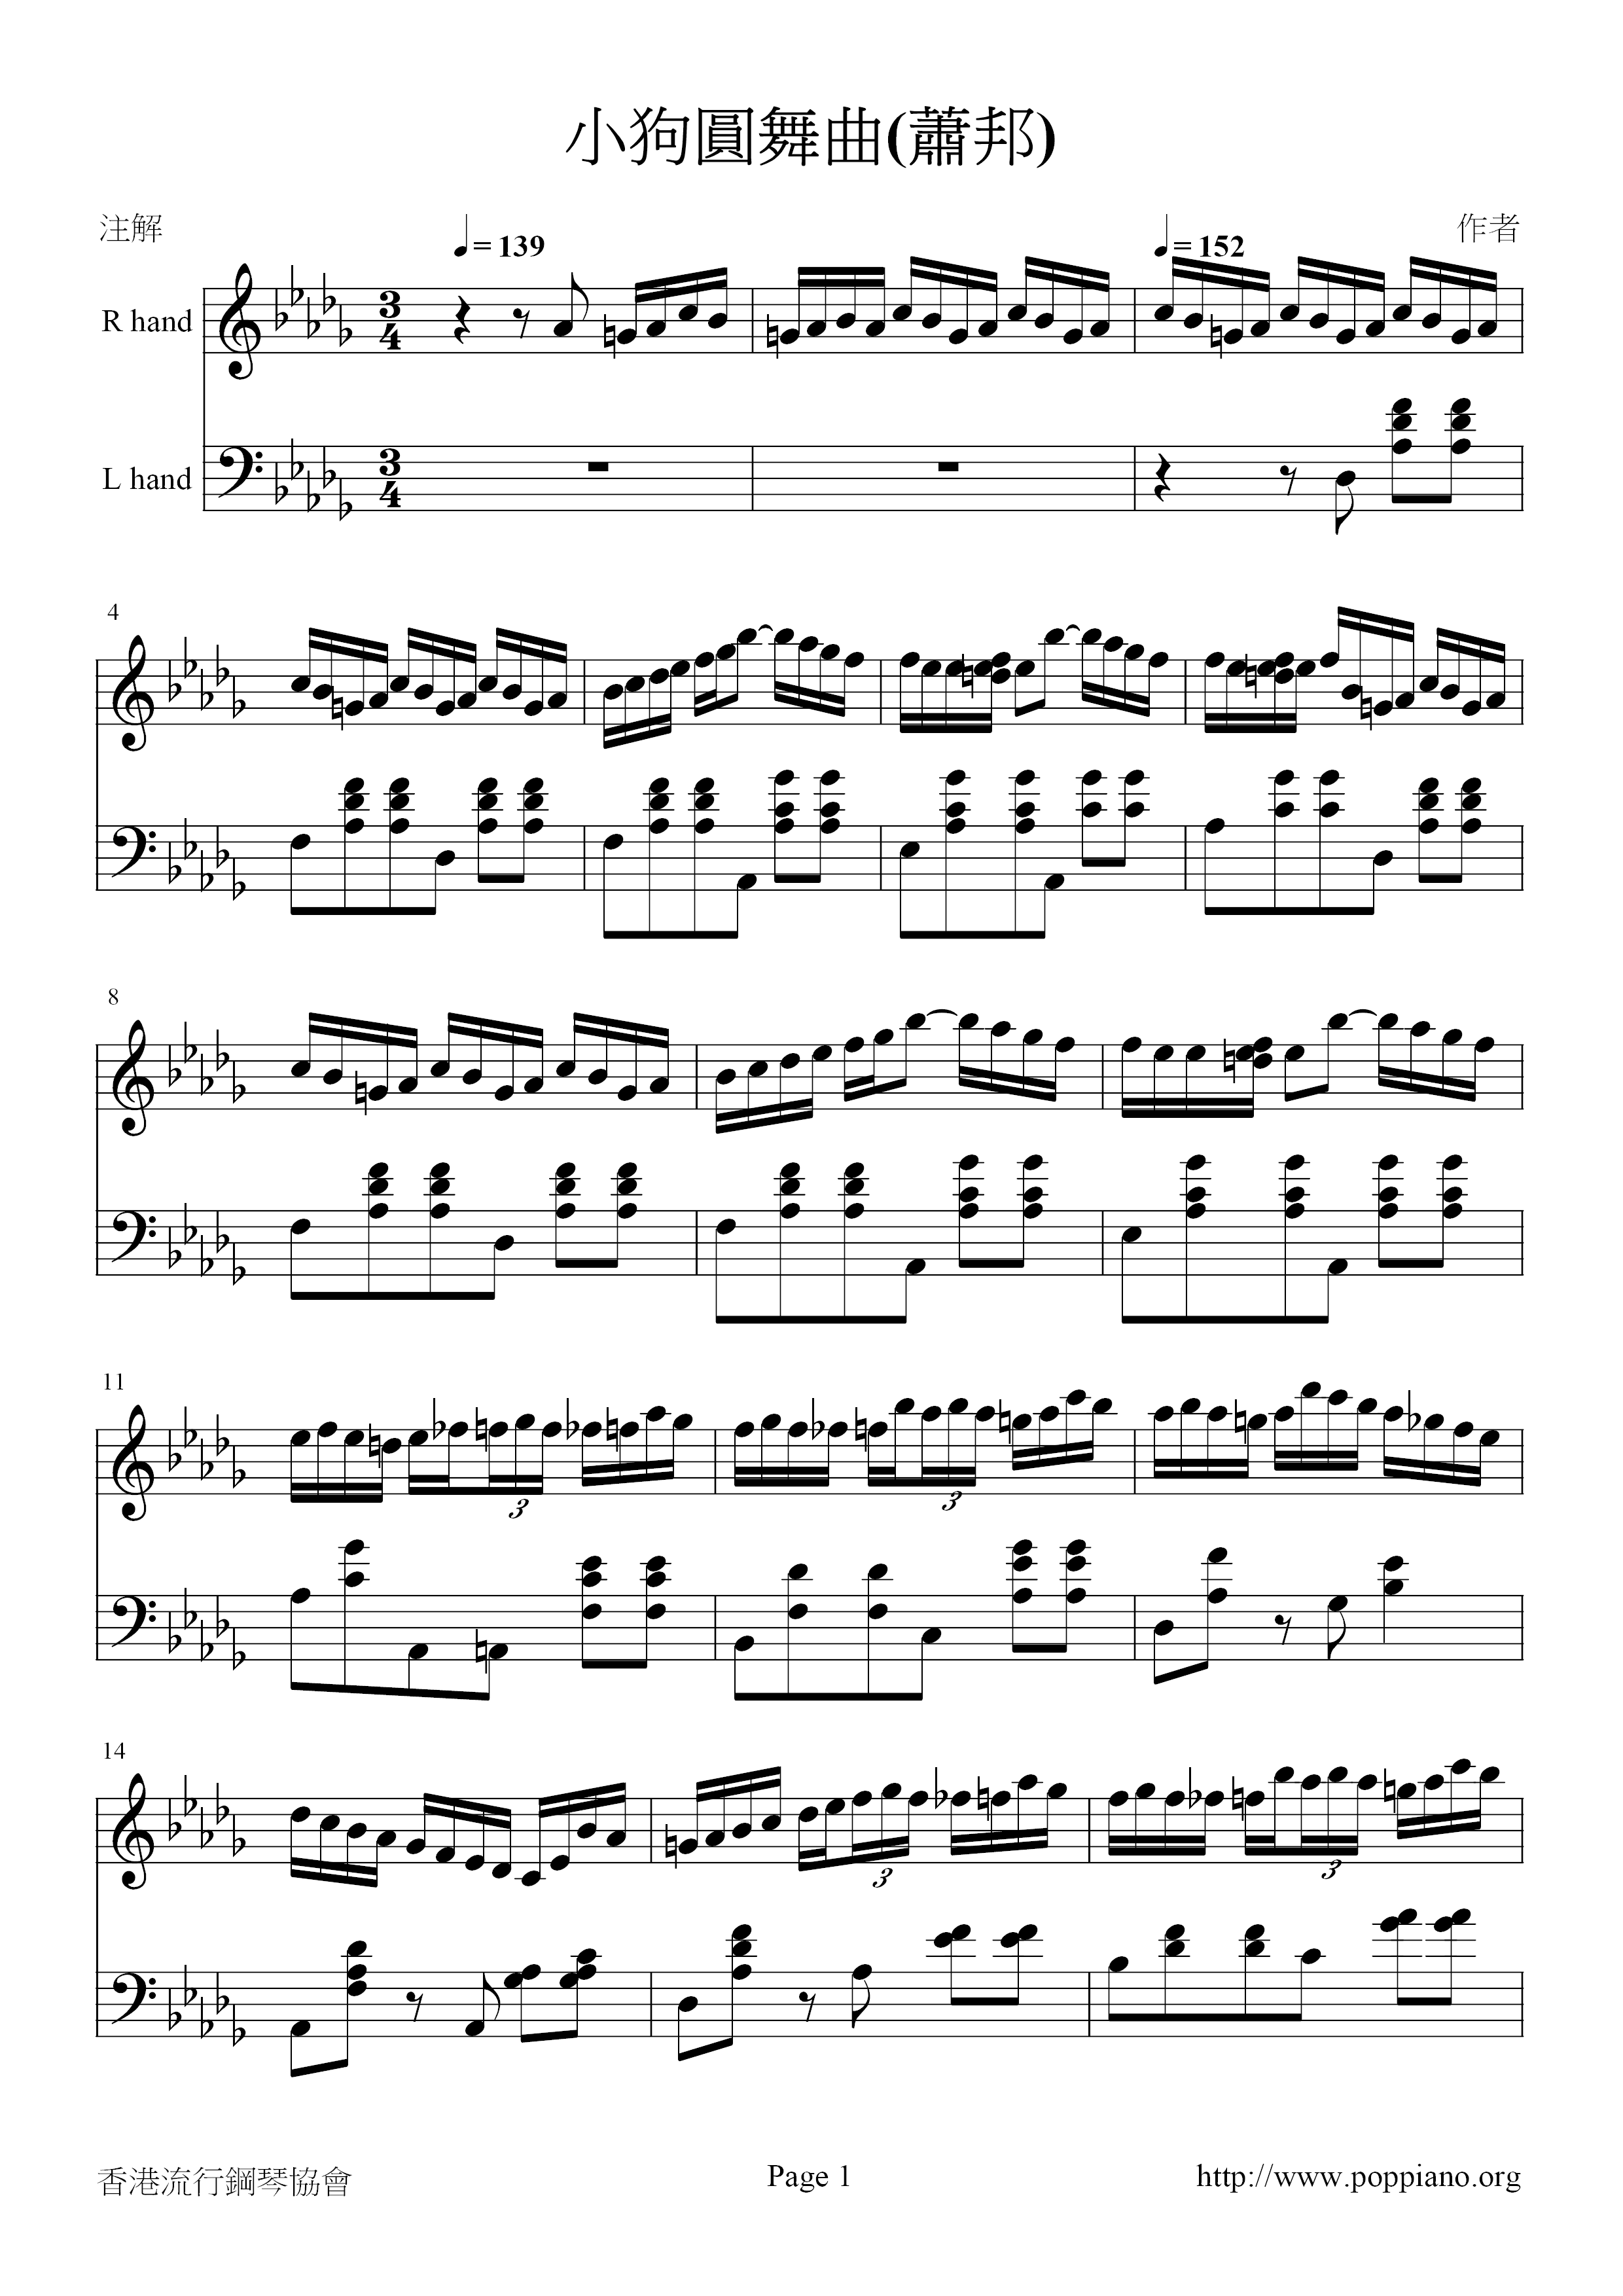 Waltz Op. 64, No. 1 Minute Waltz (小狗圓舞曲) Score